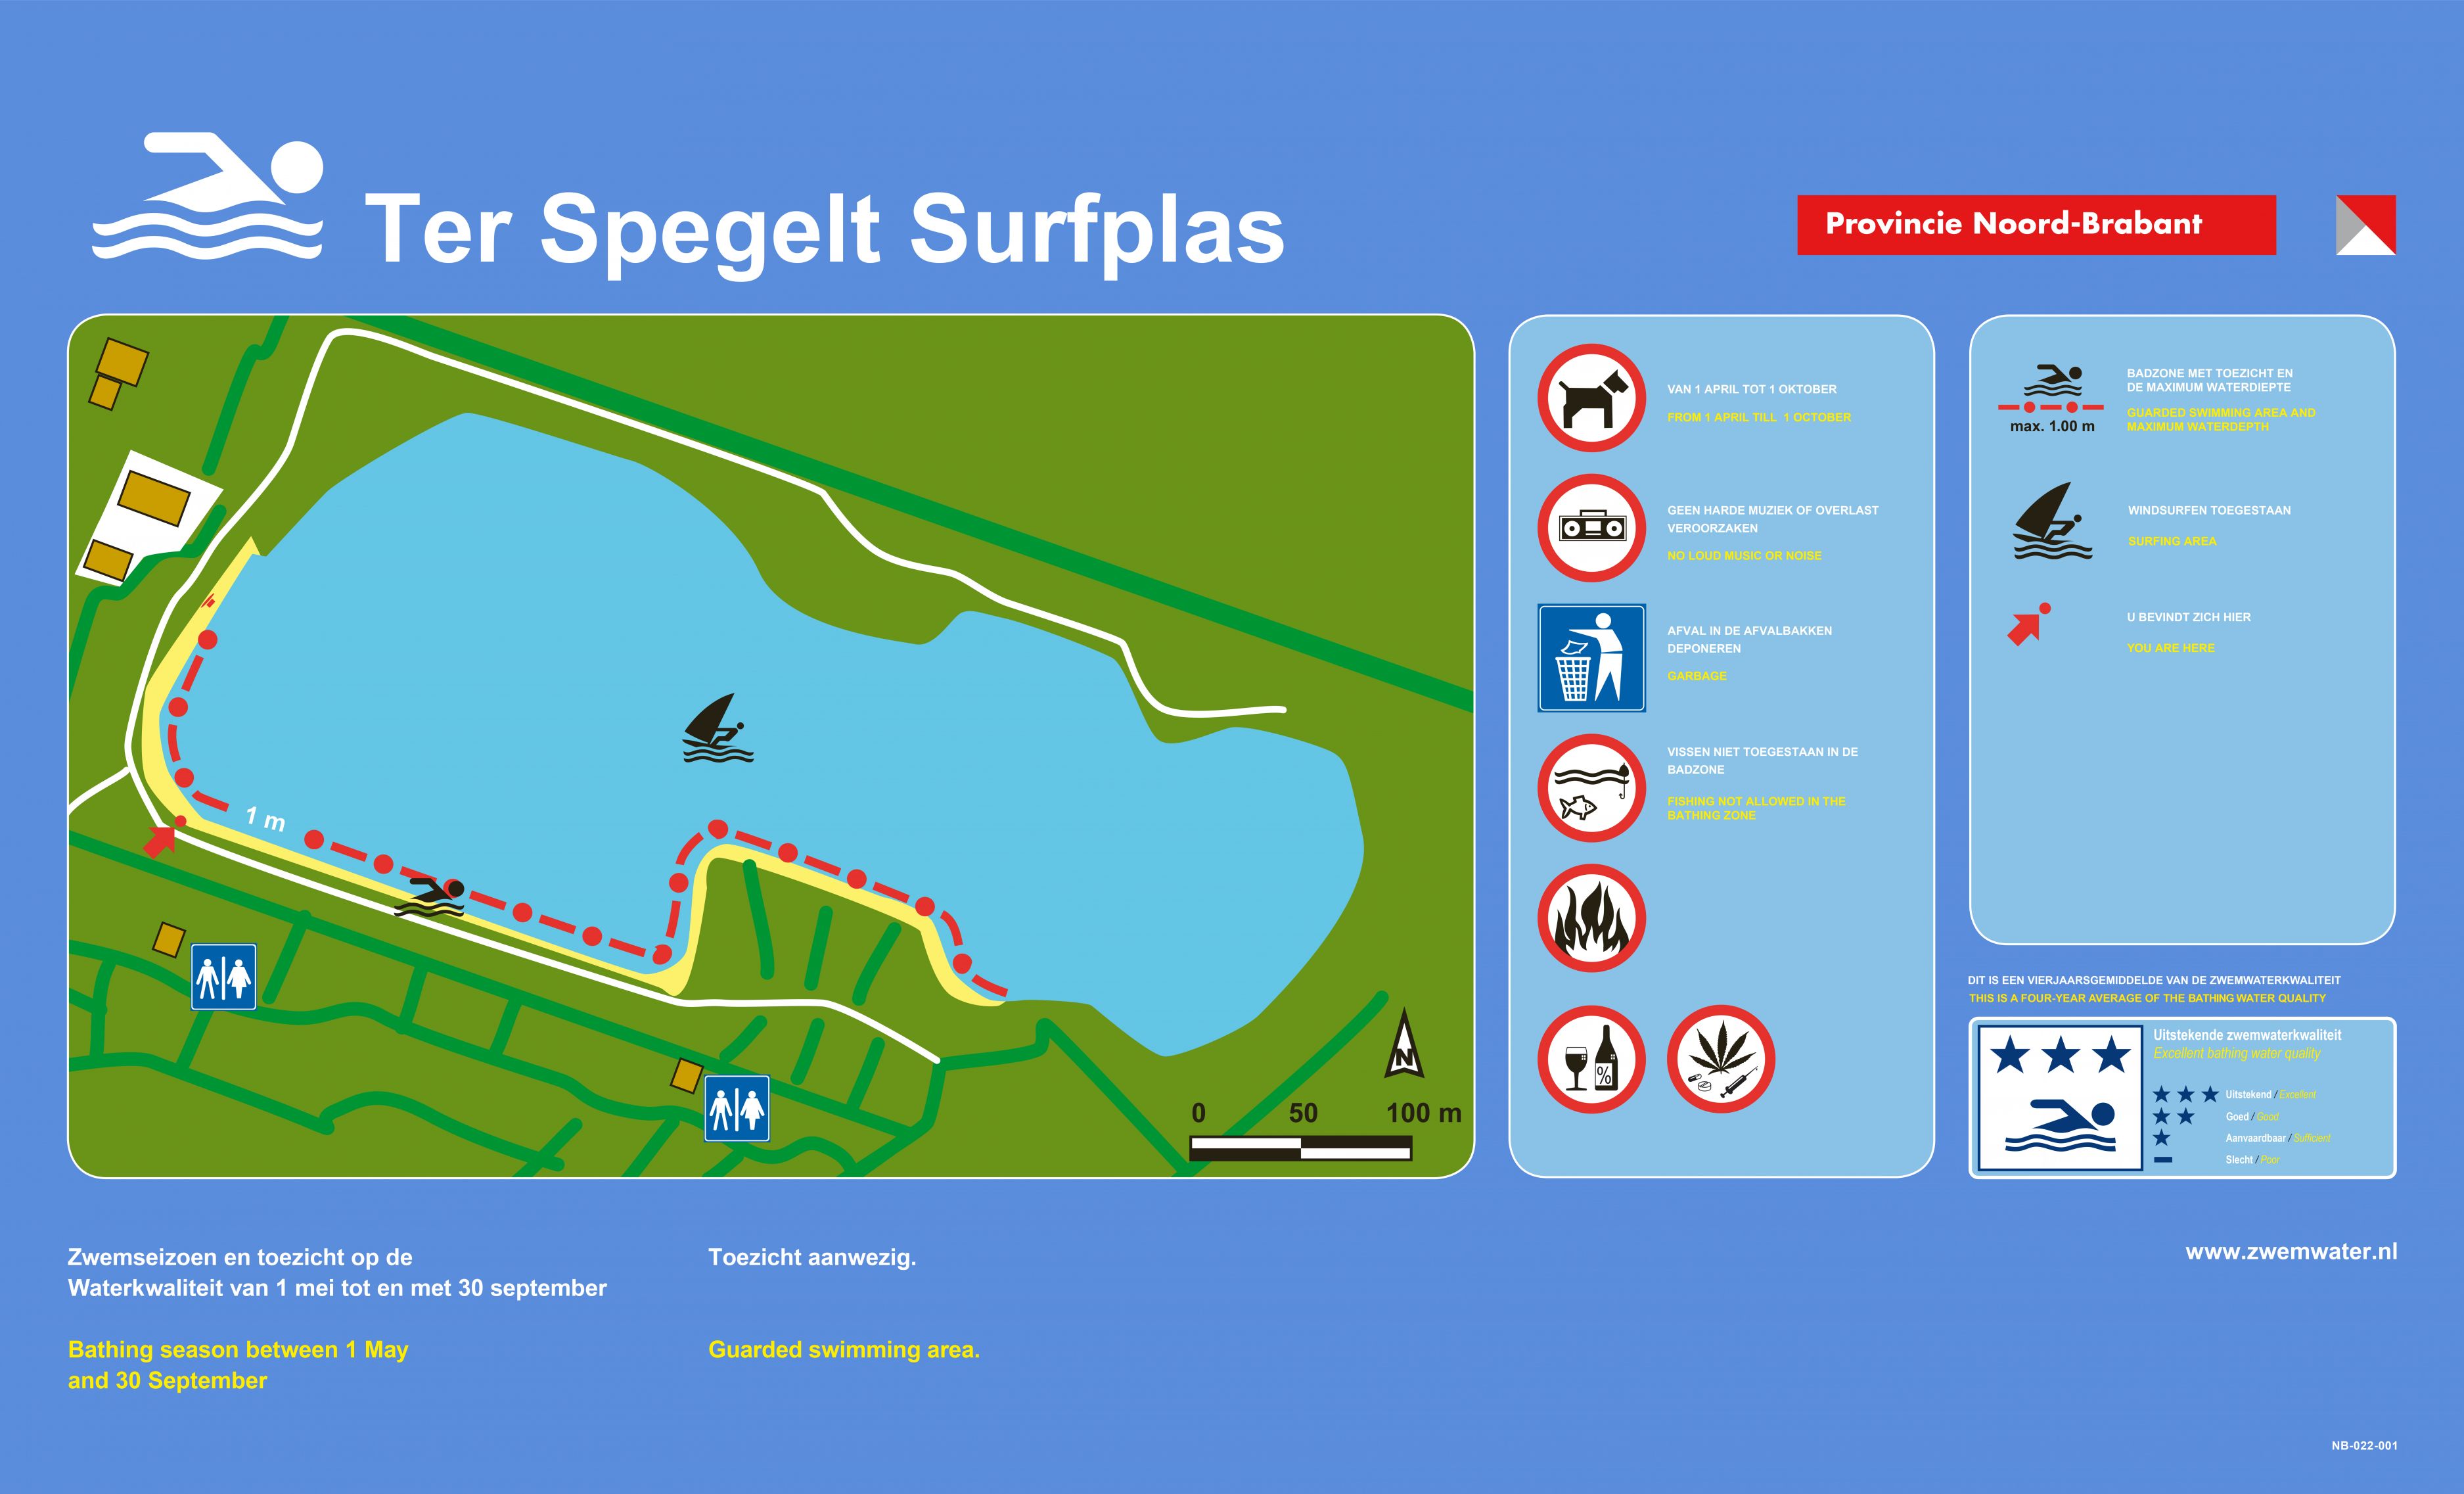 Het informatiebord bij zwemlocatie Ter Spegelt Surfplas